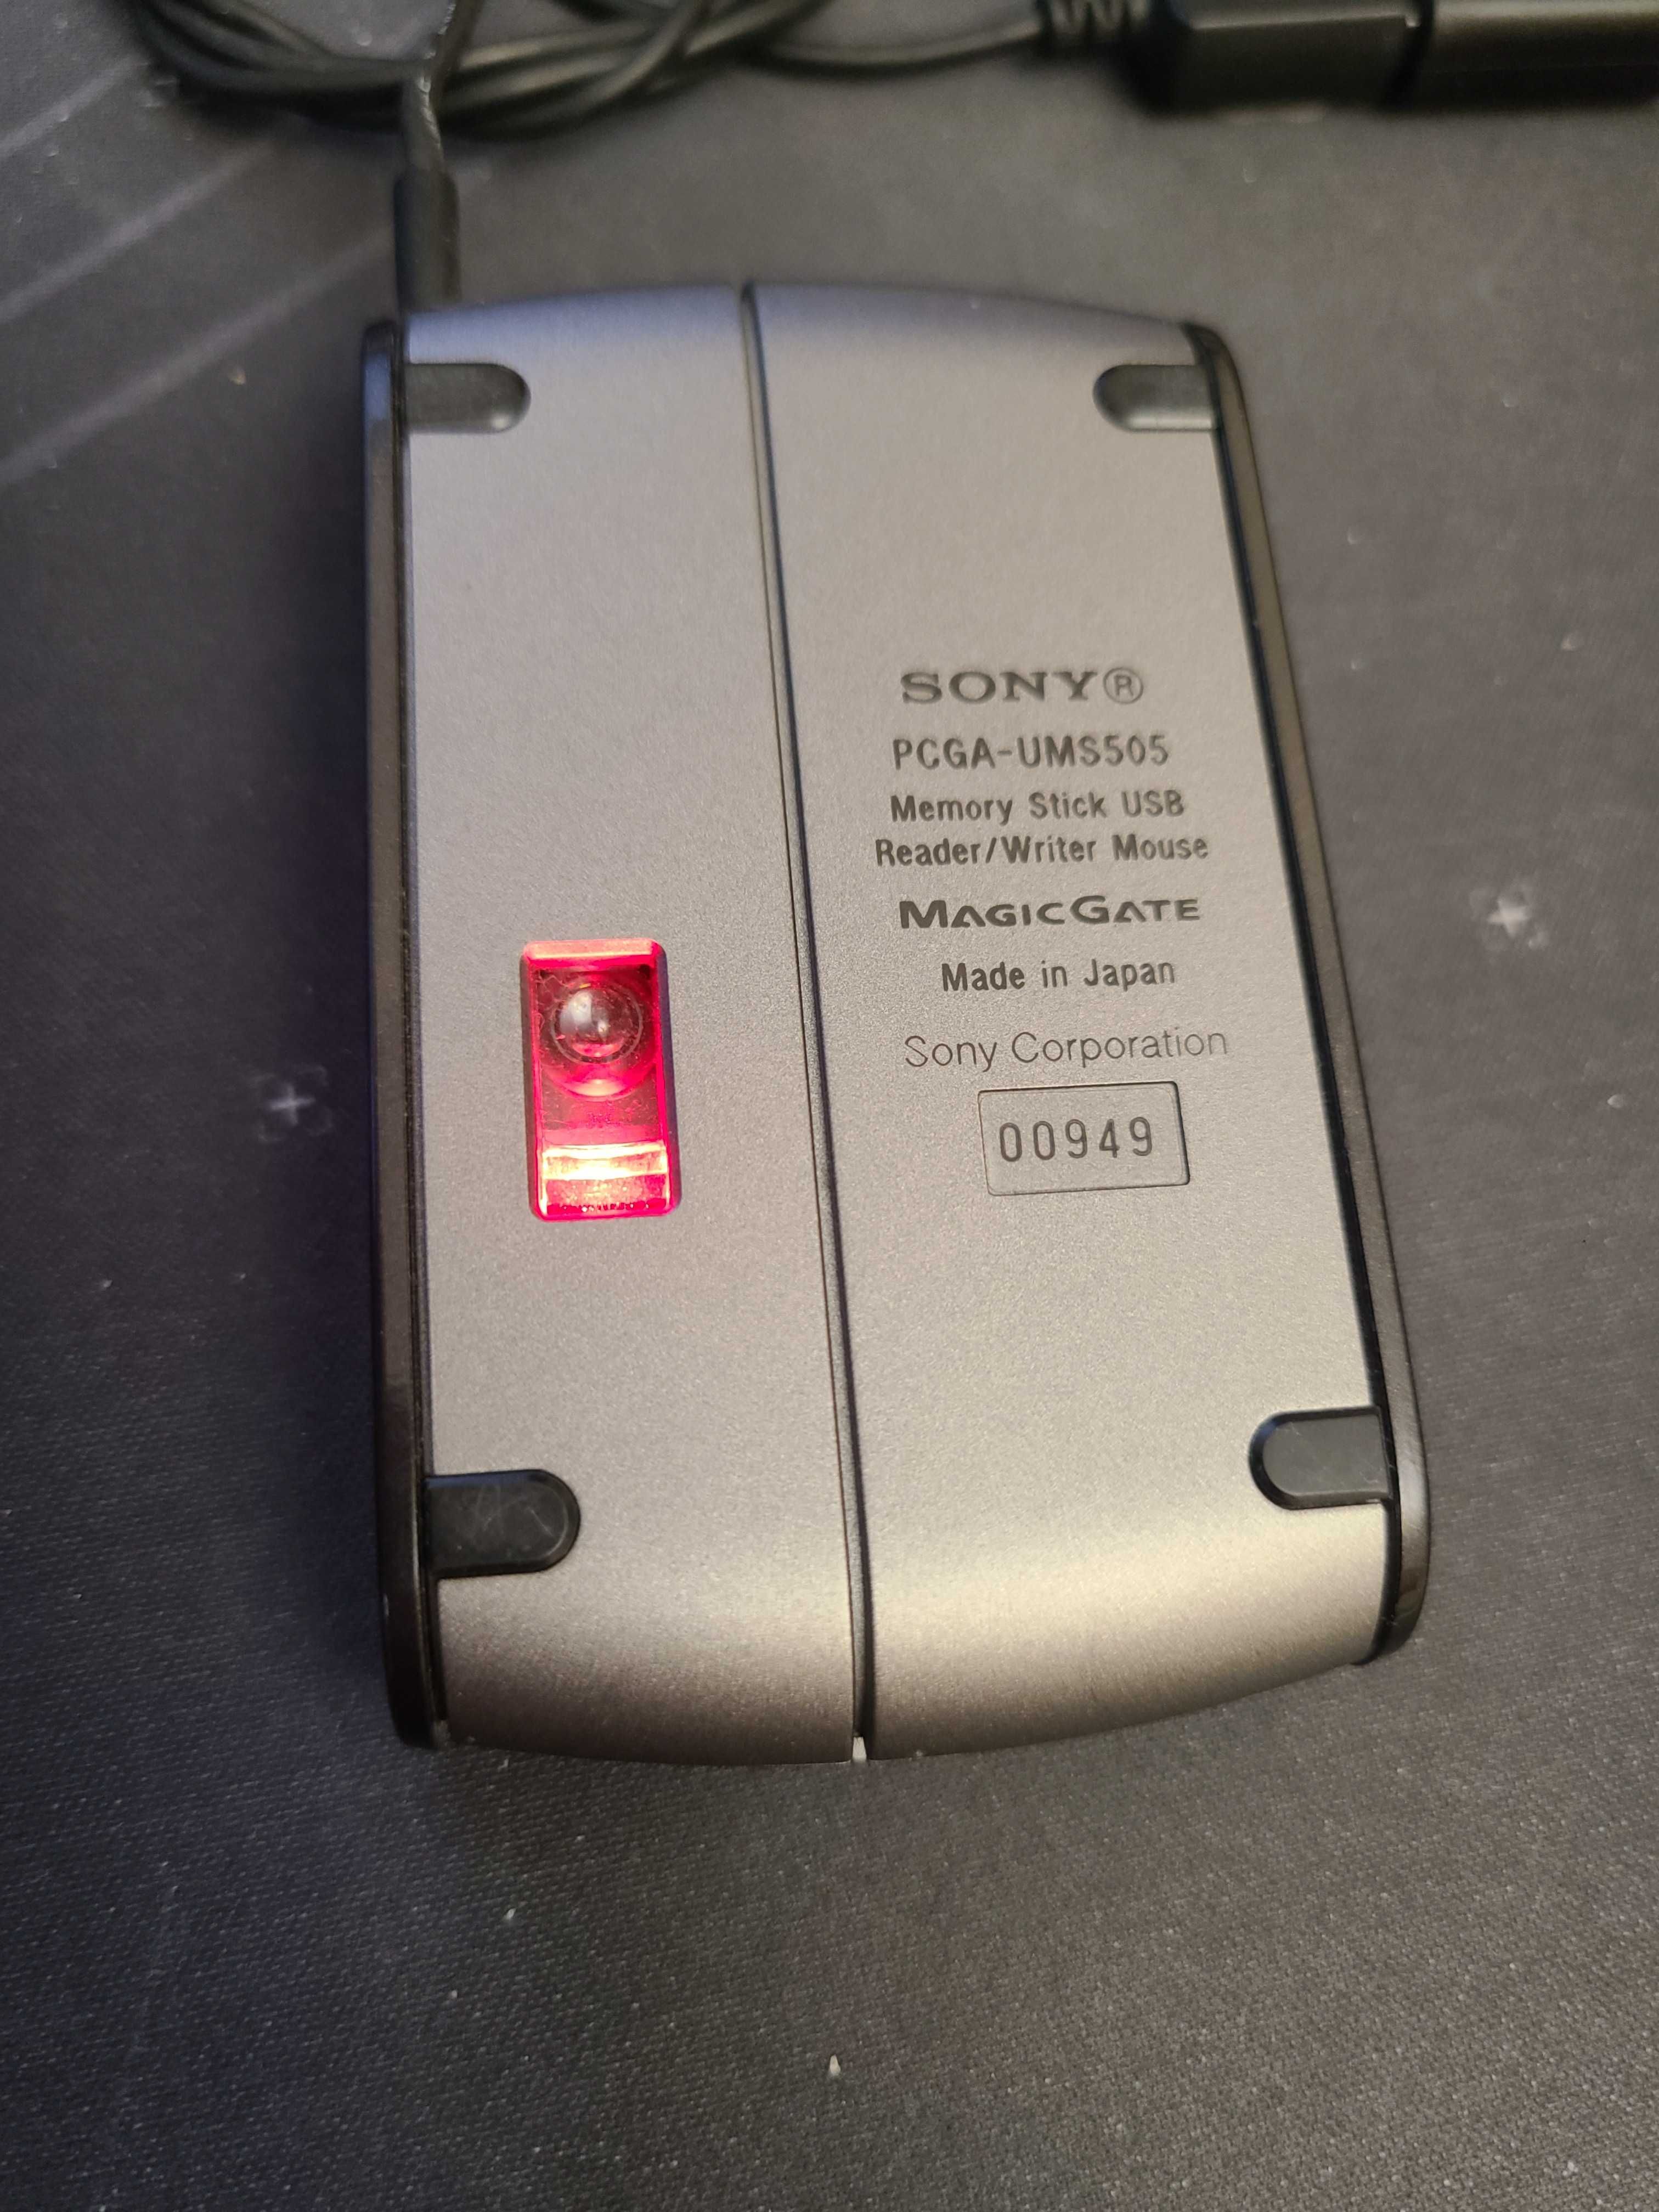 Мышь / Memory Stick USB Reader/Writer Mouse
MAGIC GAΤΕ